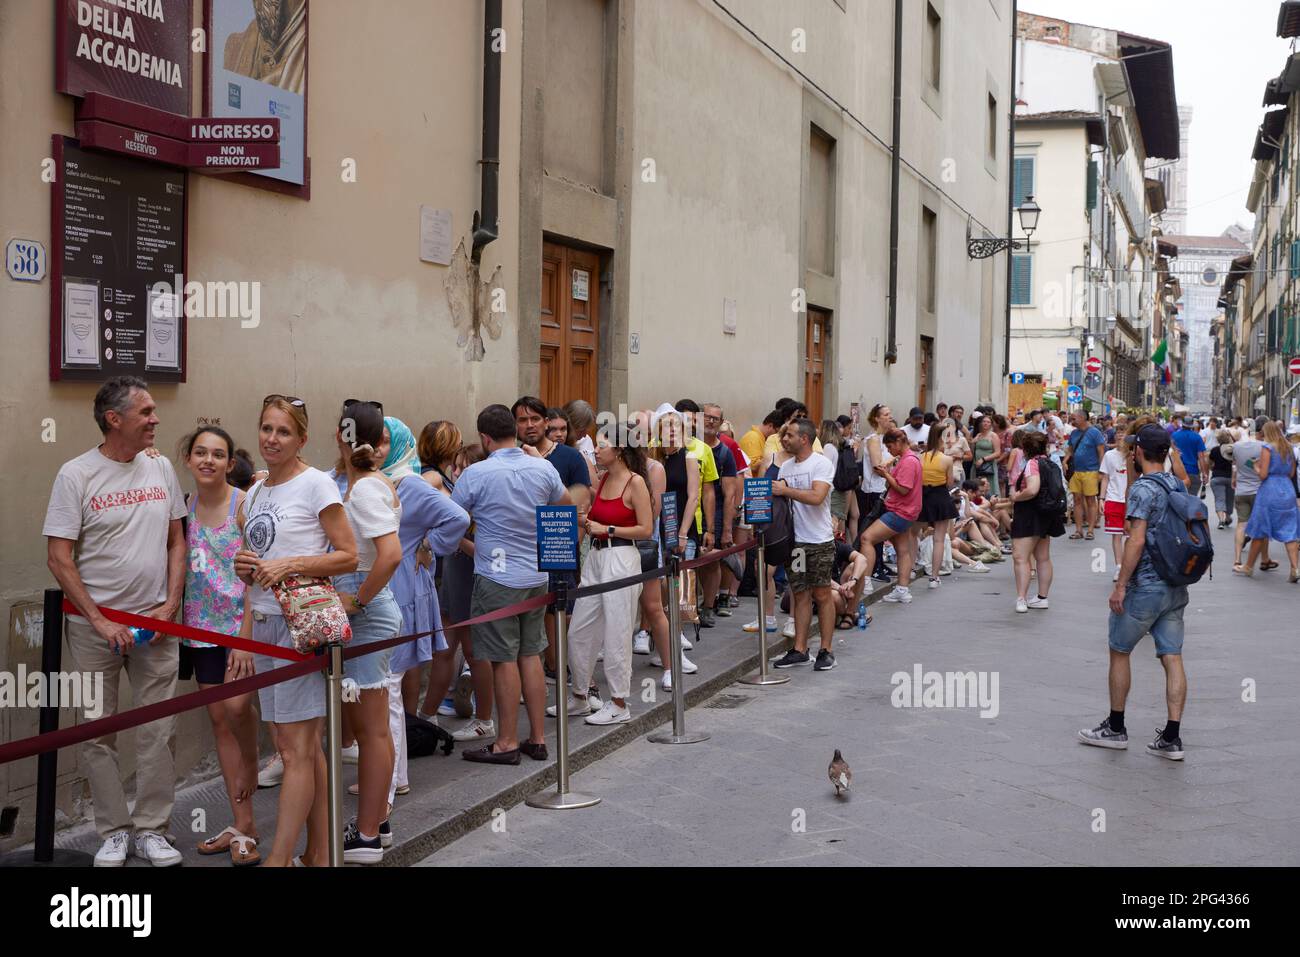 Persone in coda fuori dalla Galleria dell'Accademia, Firenze, Italia Foto Stock